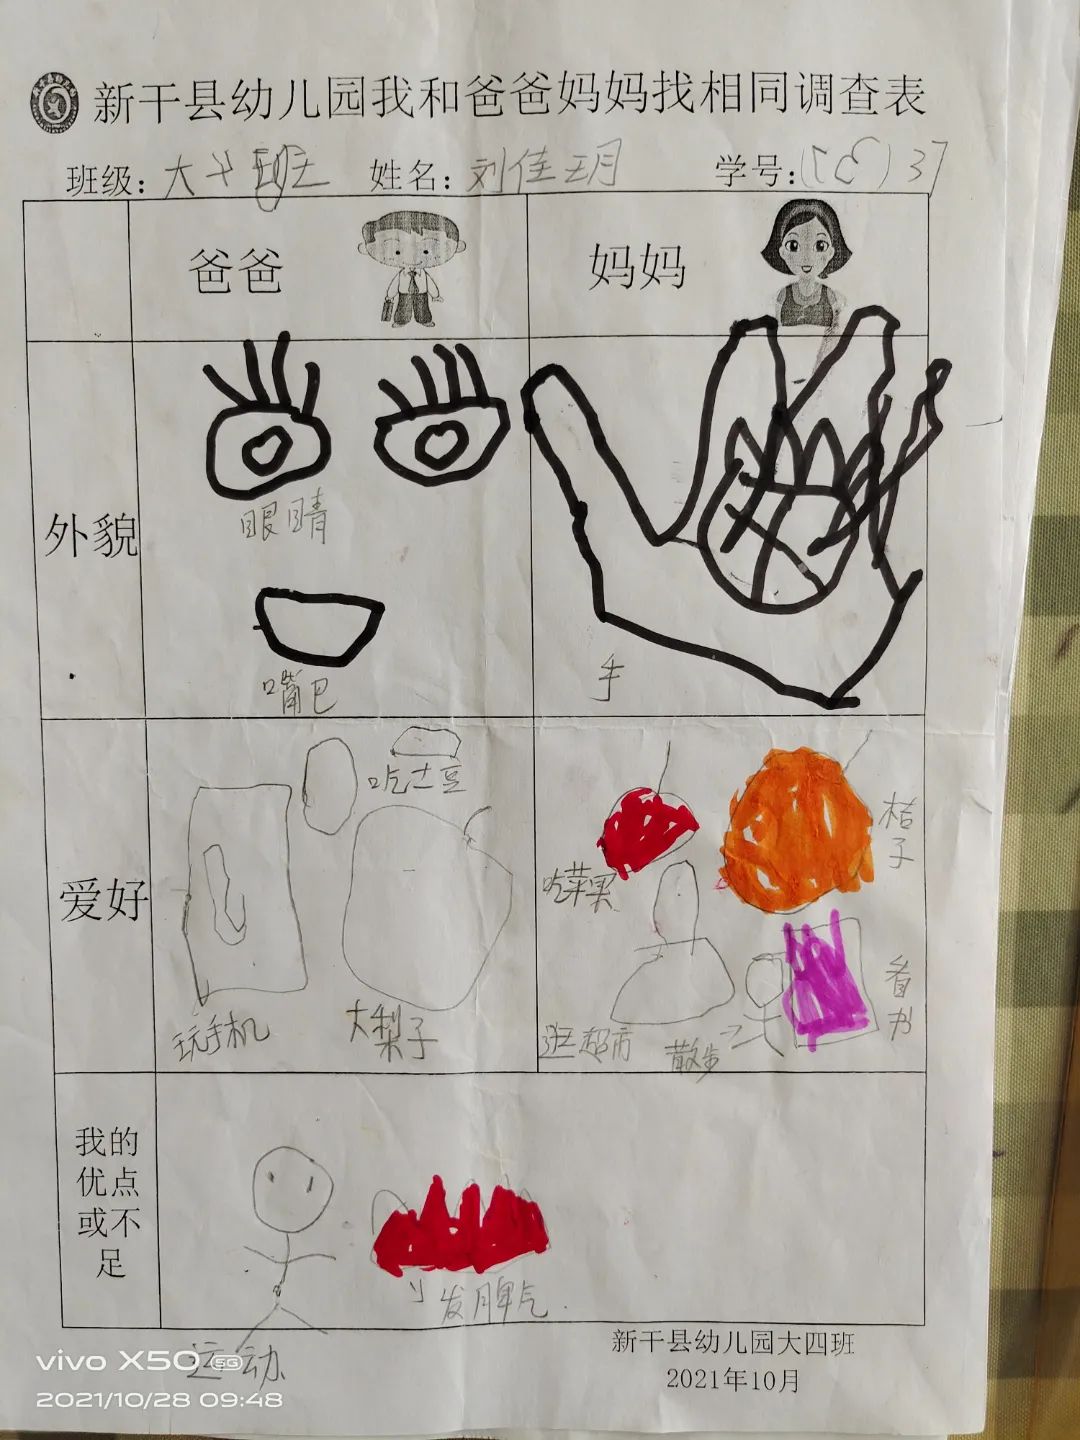 幼儿园父母职业调查表图片